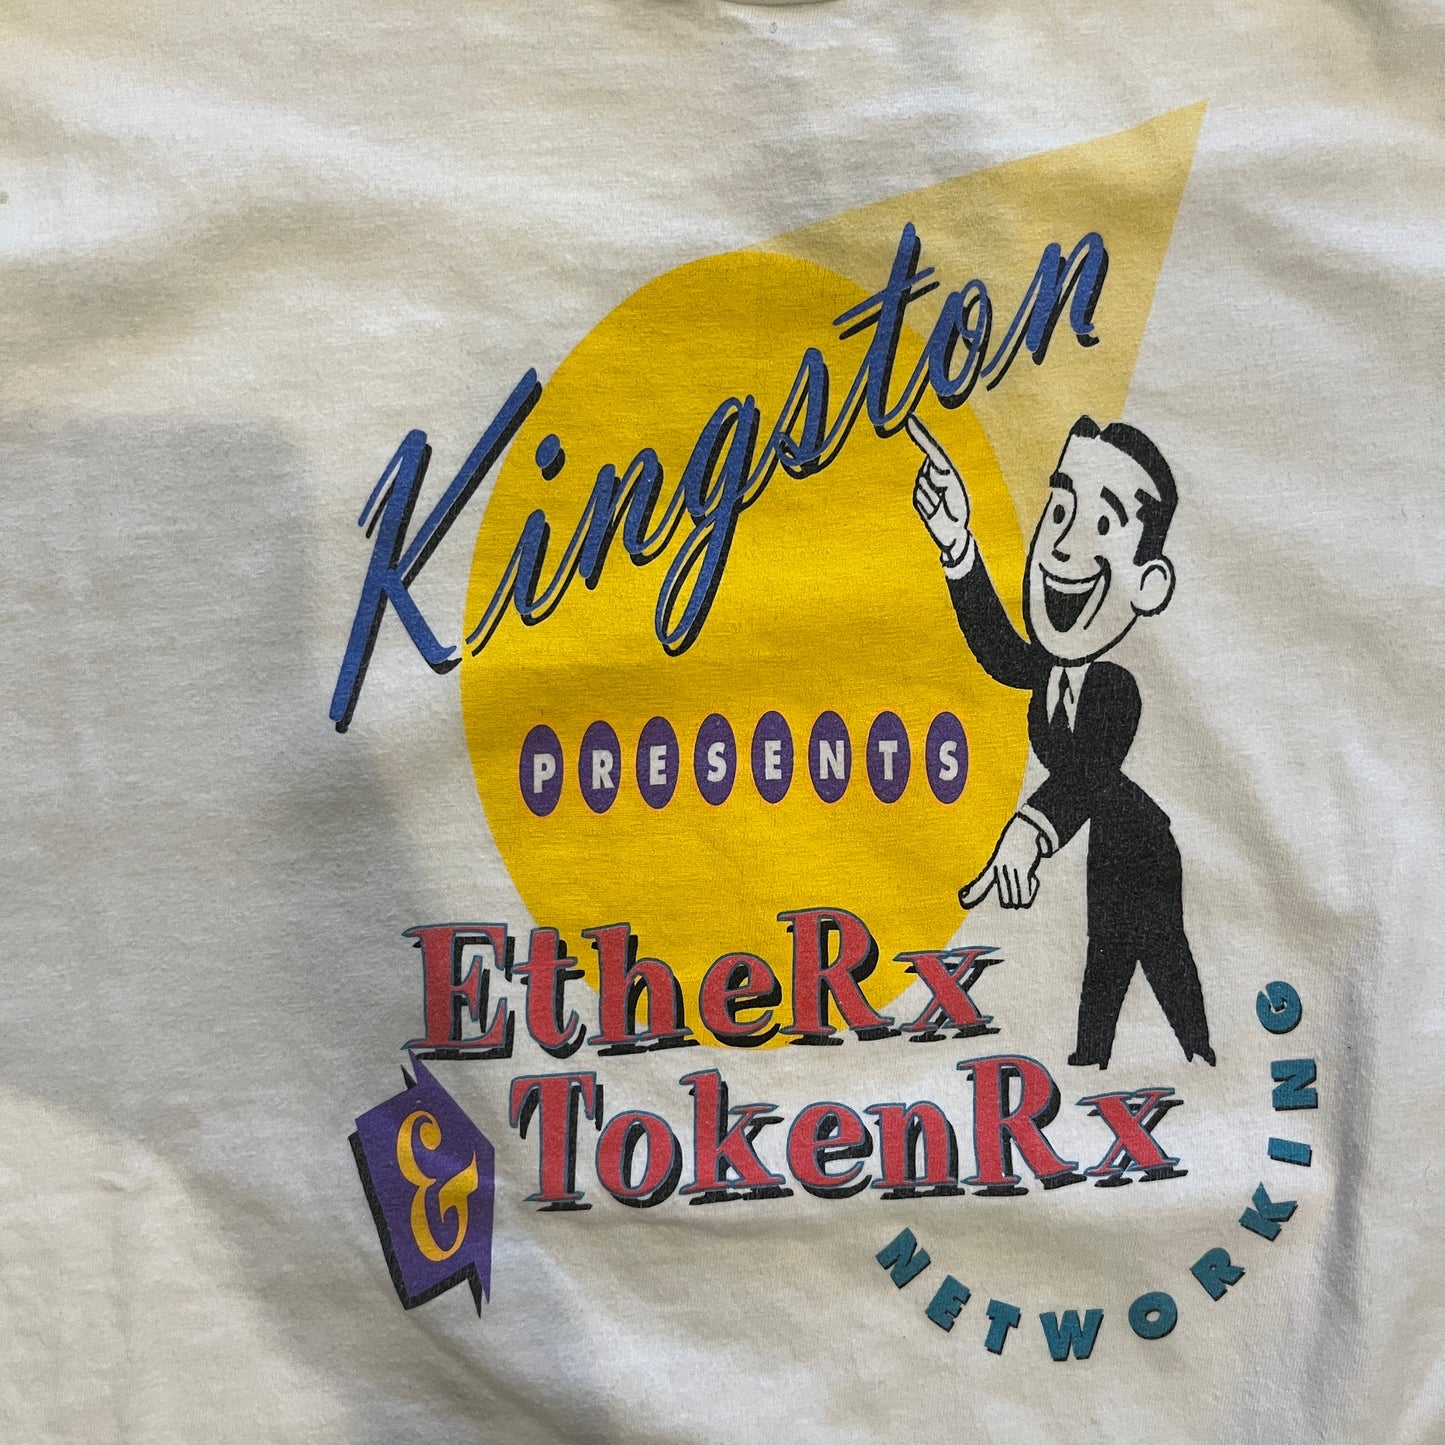 Vintage Kingston EtheRx TokenRx